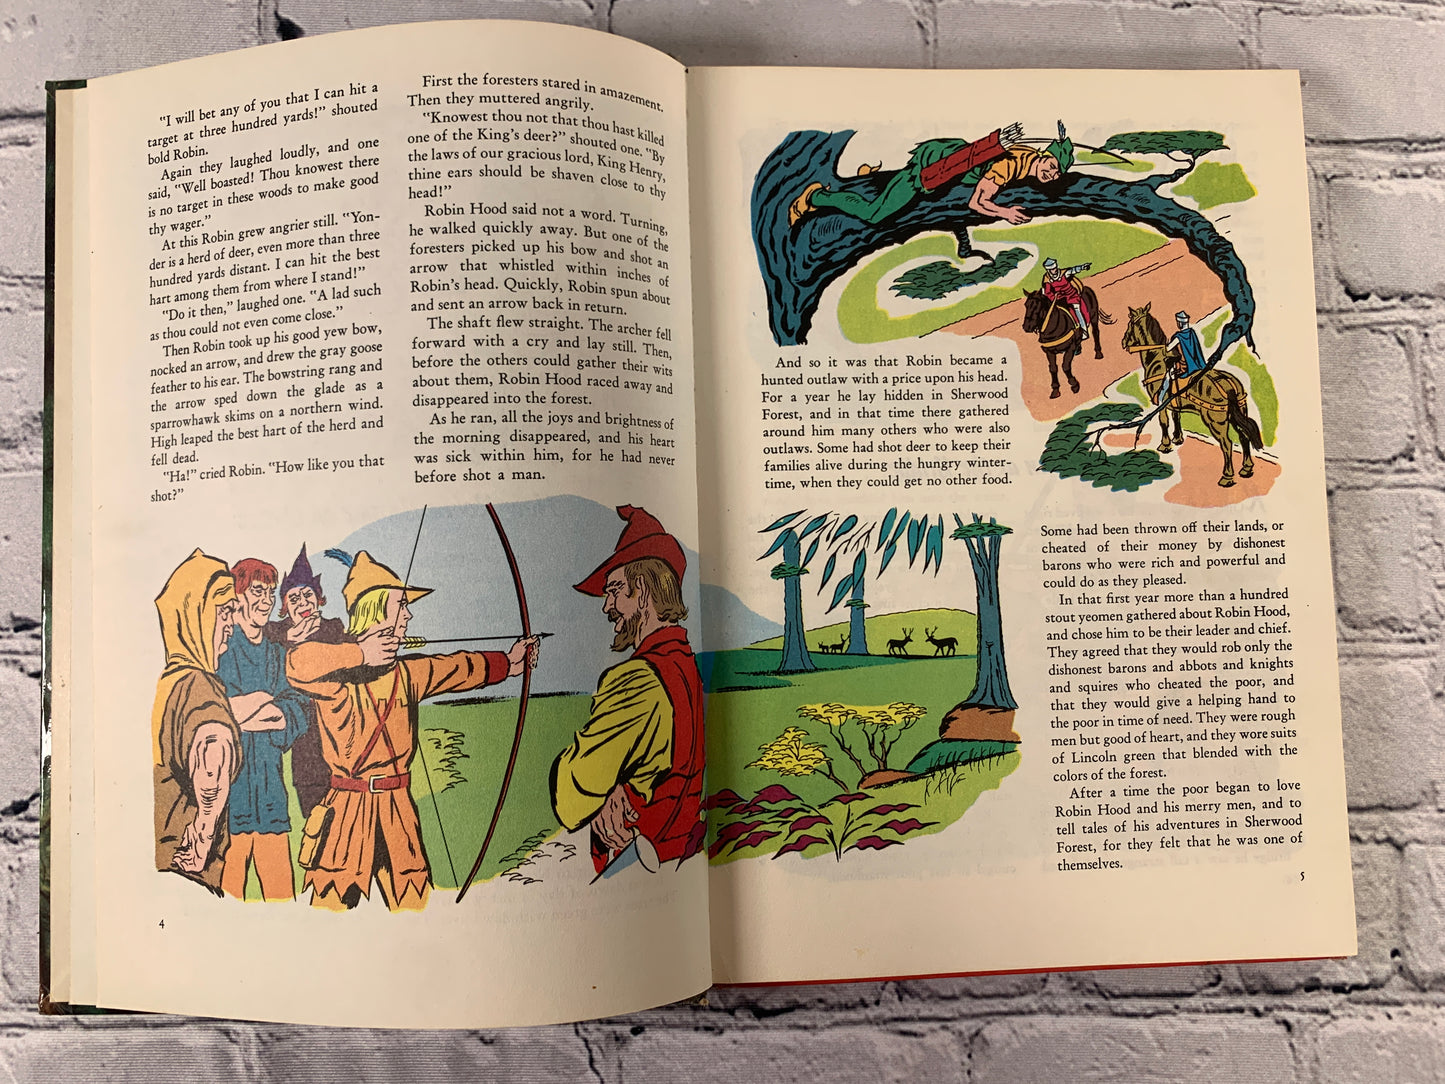 Howard Pyle's The Merry Adventures of Robin Hood [1963 · Golden Press Book]